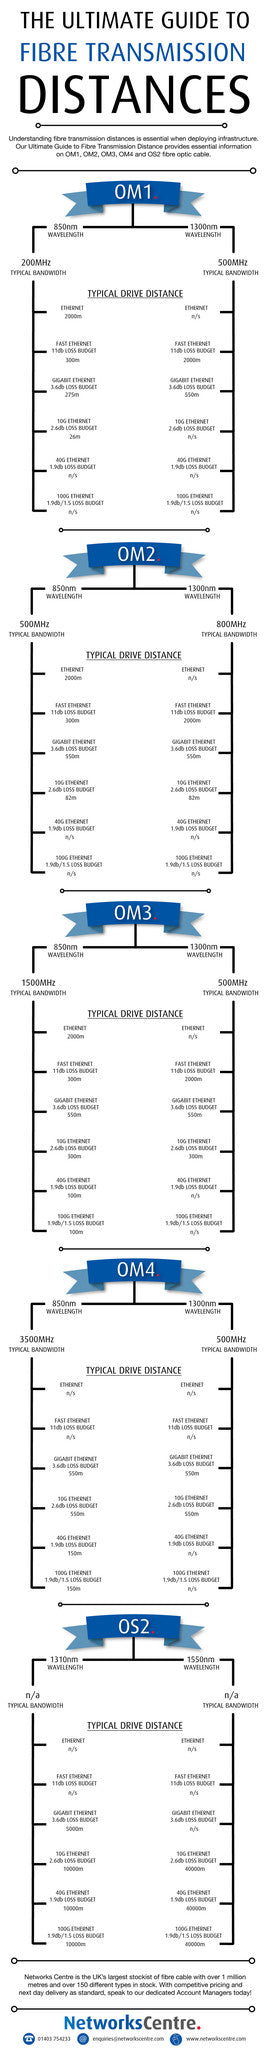 Fibre Optic Transmission Distances Infographic